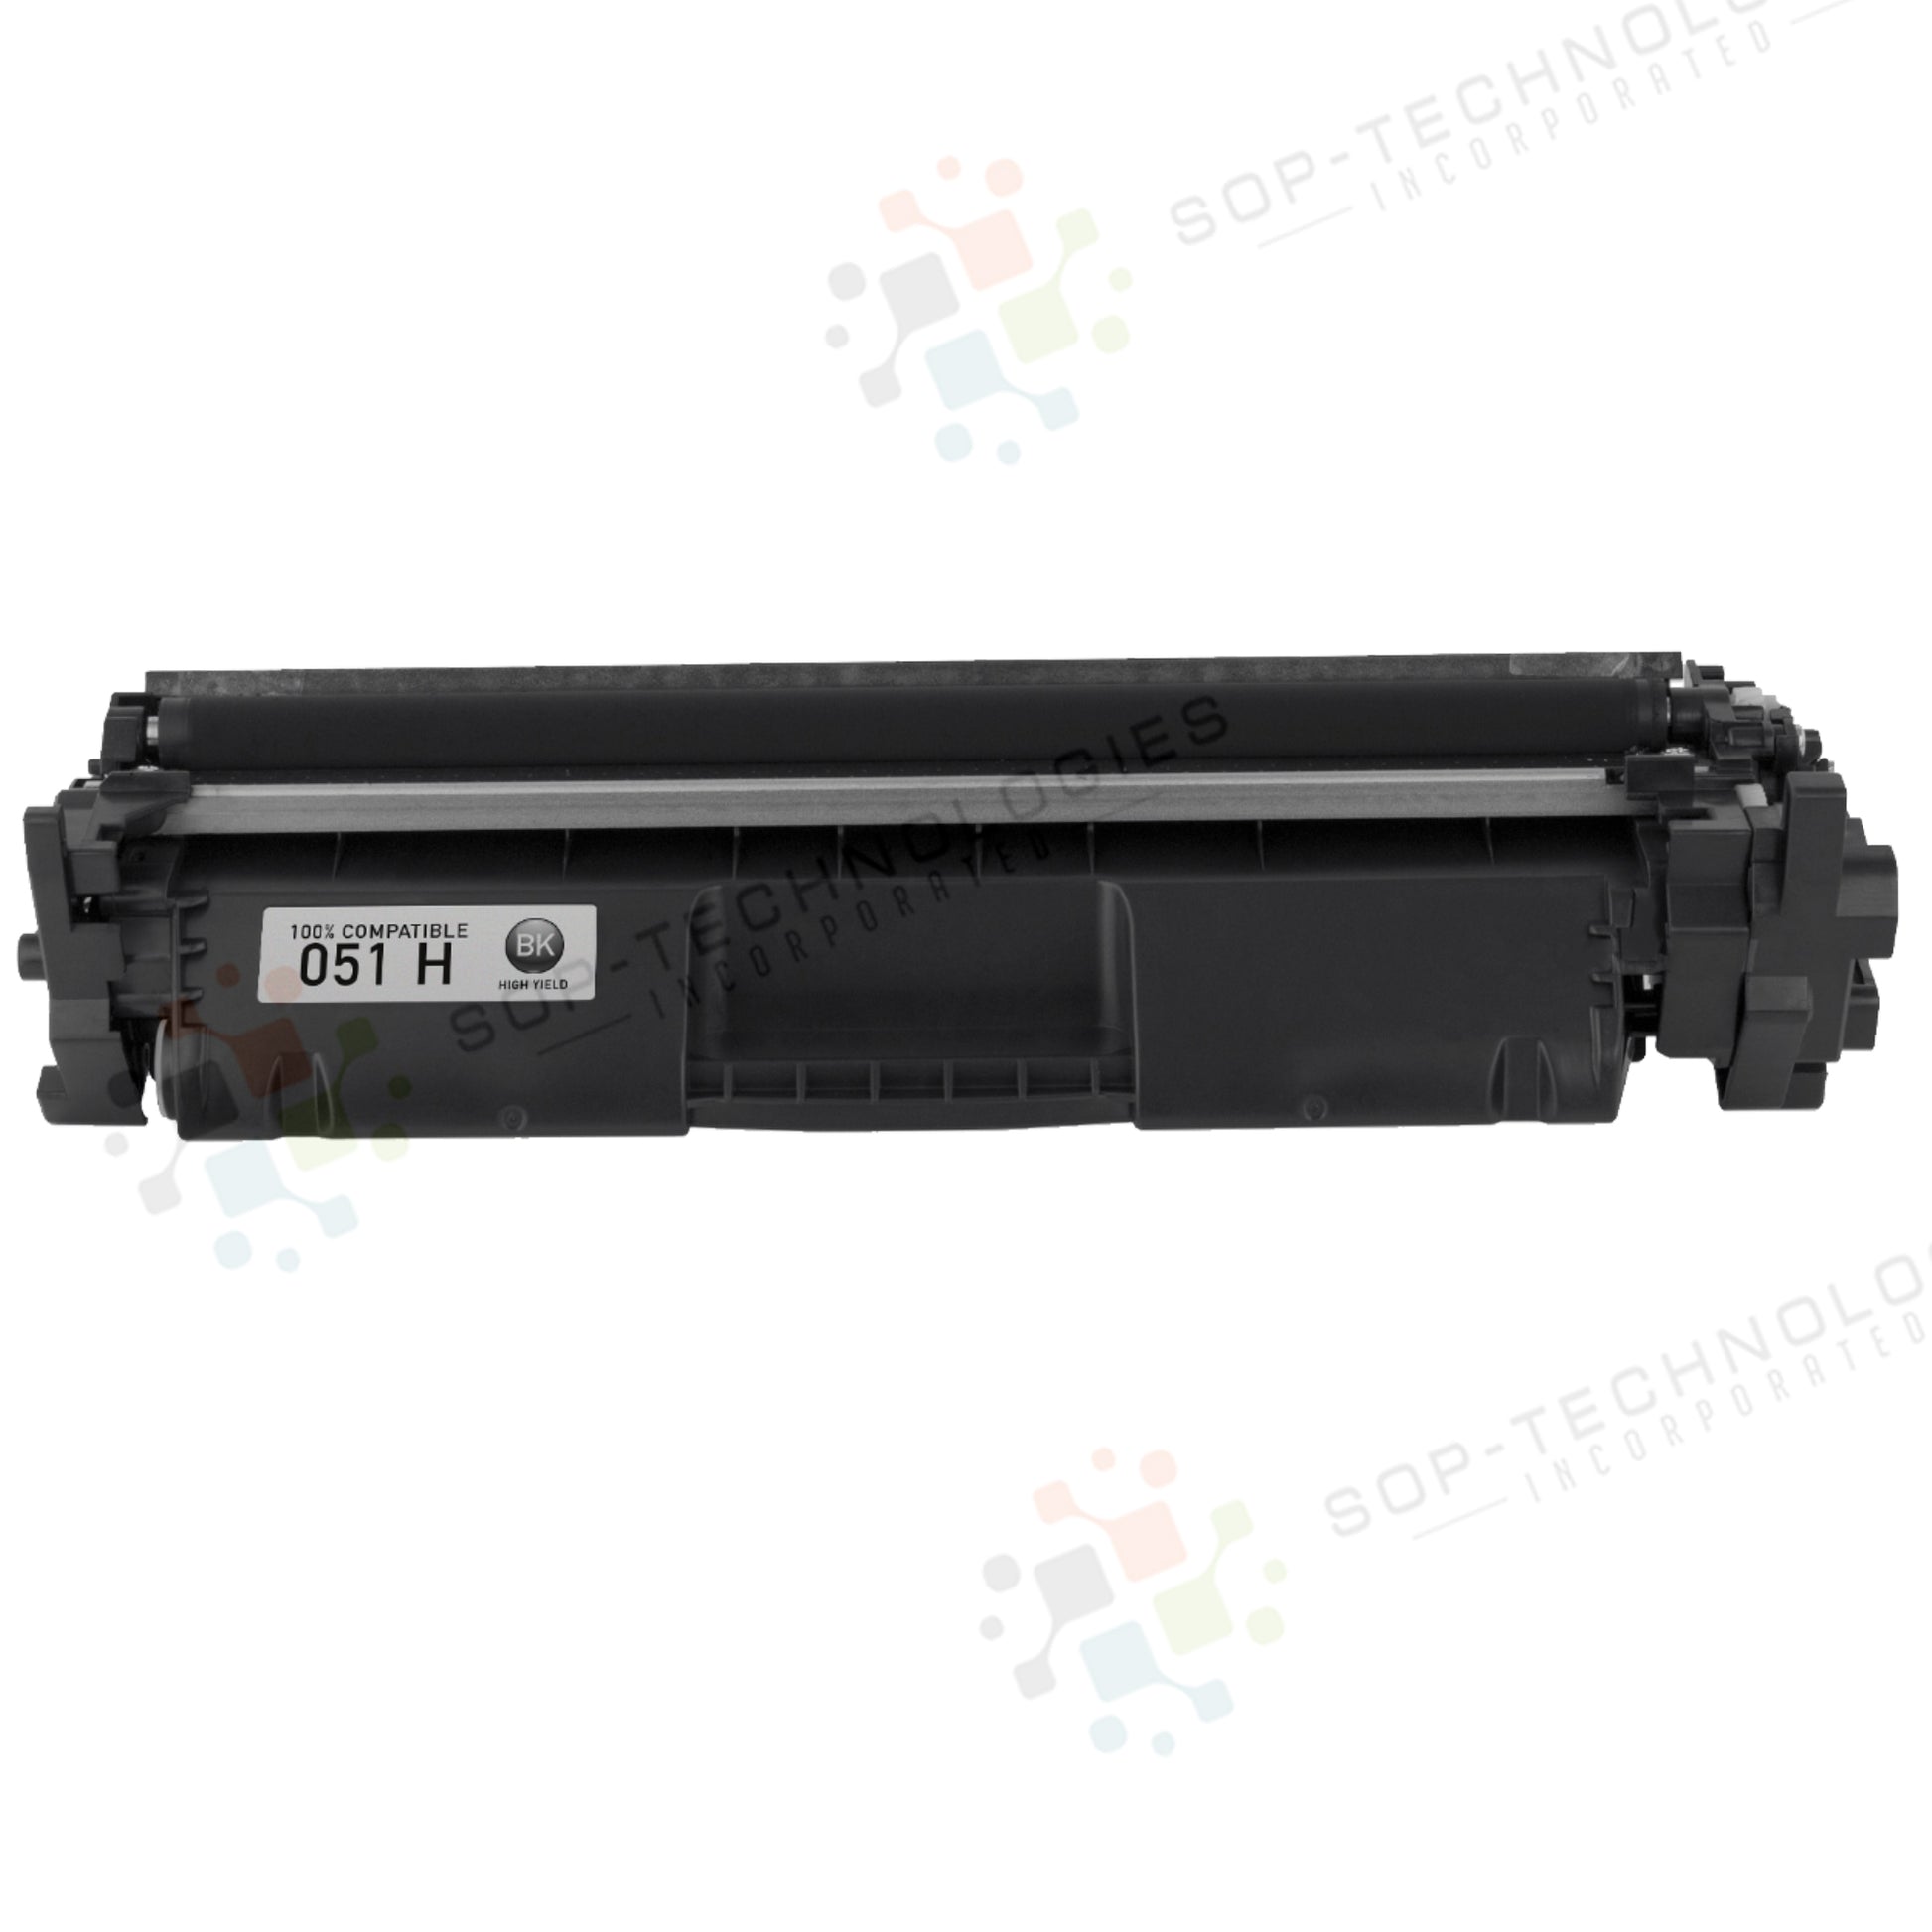 5pk Toner Cartridge Replacement for Canon imageCLASS LBP162dw - SOP-TECHNOLOGIES, INC.